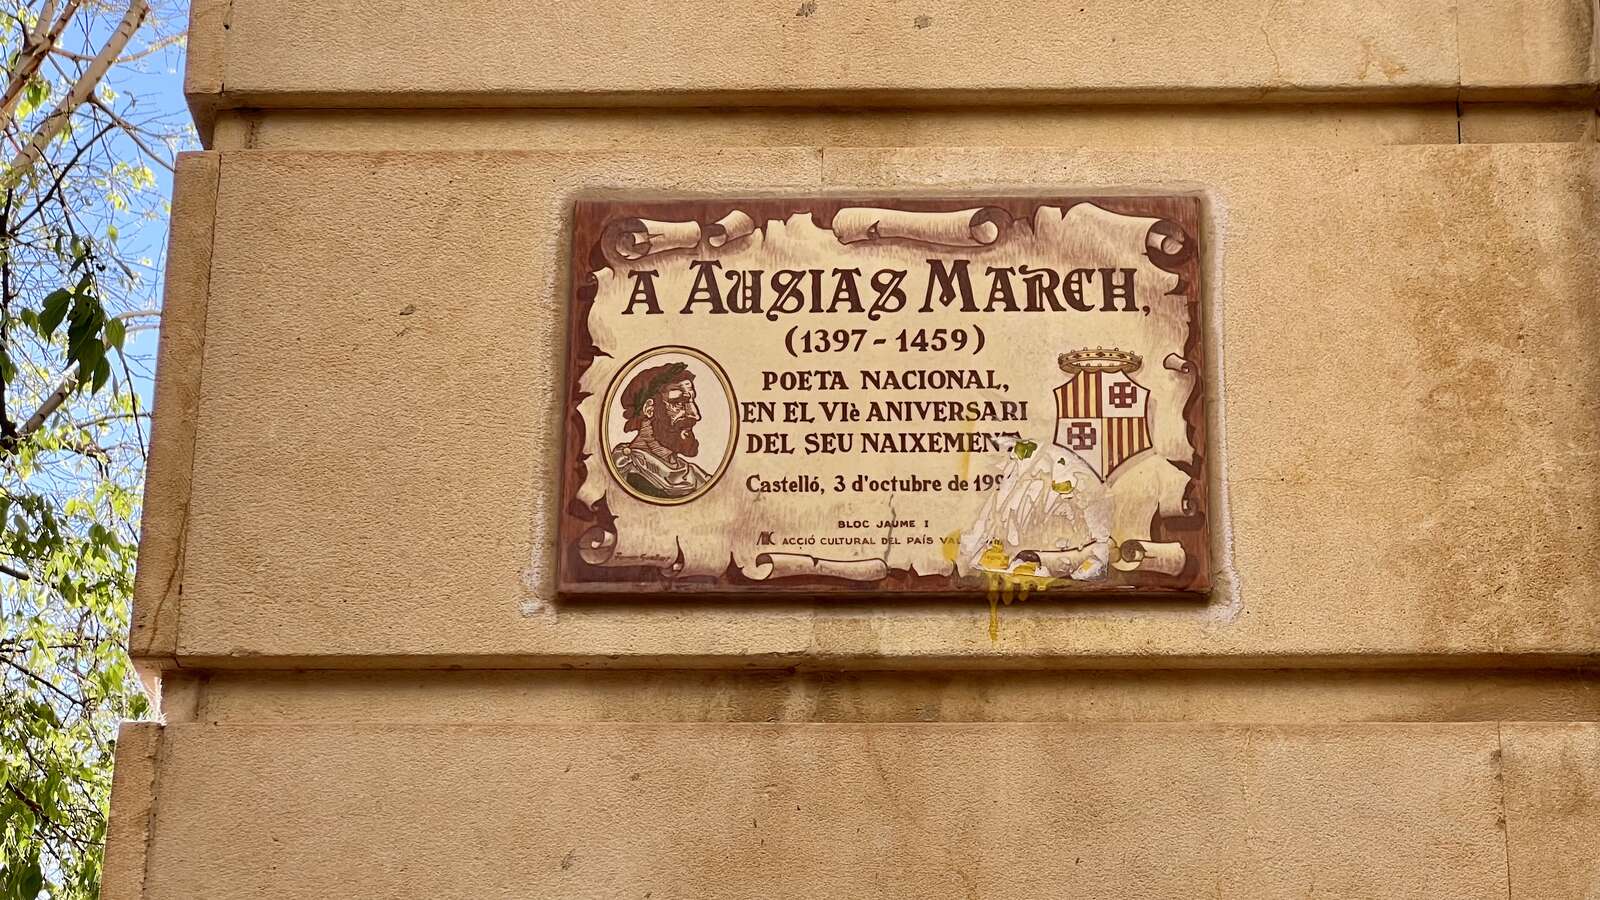 Placa en una paret d’un carrer. El text diu: “A Ausiàs March (1397-1459), poeta nacional, en el sisè aniversari del seu naixement a Castelló, 3 d’octubre de 19… (els últims dígits de l’any no es llegeixen, però s’entén que és 1997).”